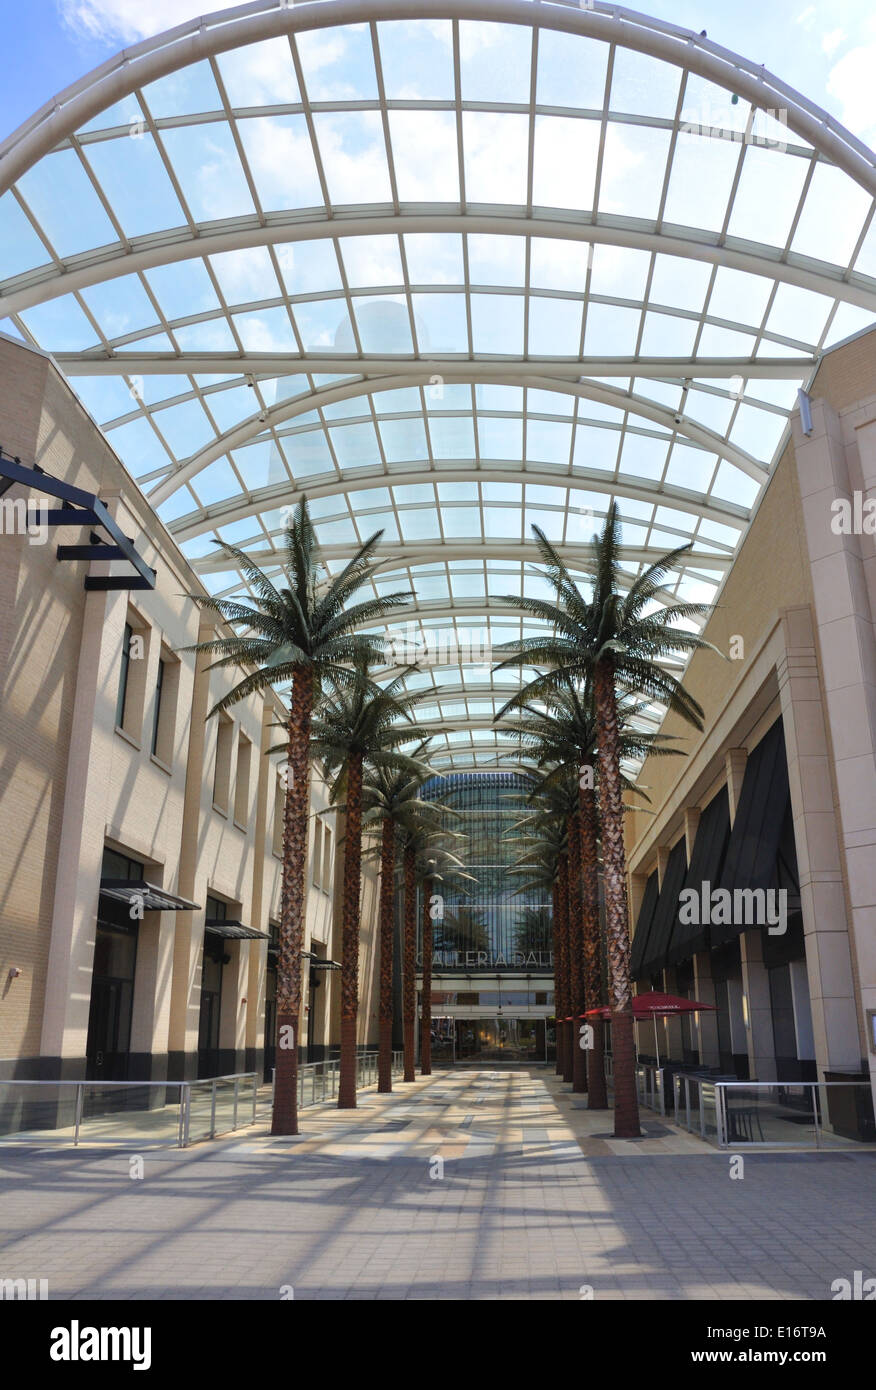 Galleria shopping mall Dallas, Texas, USA Stock Photo